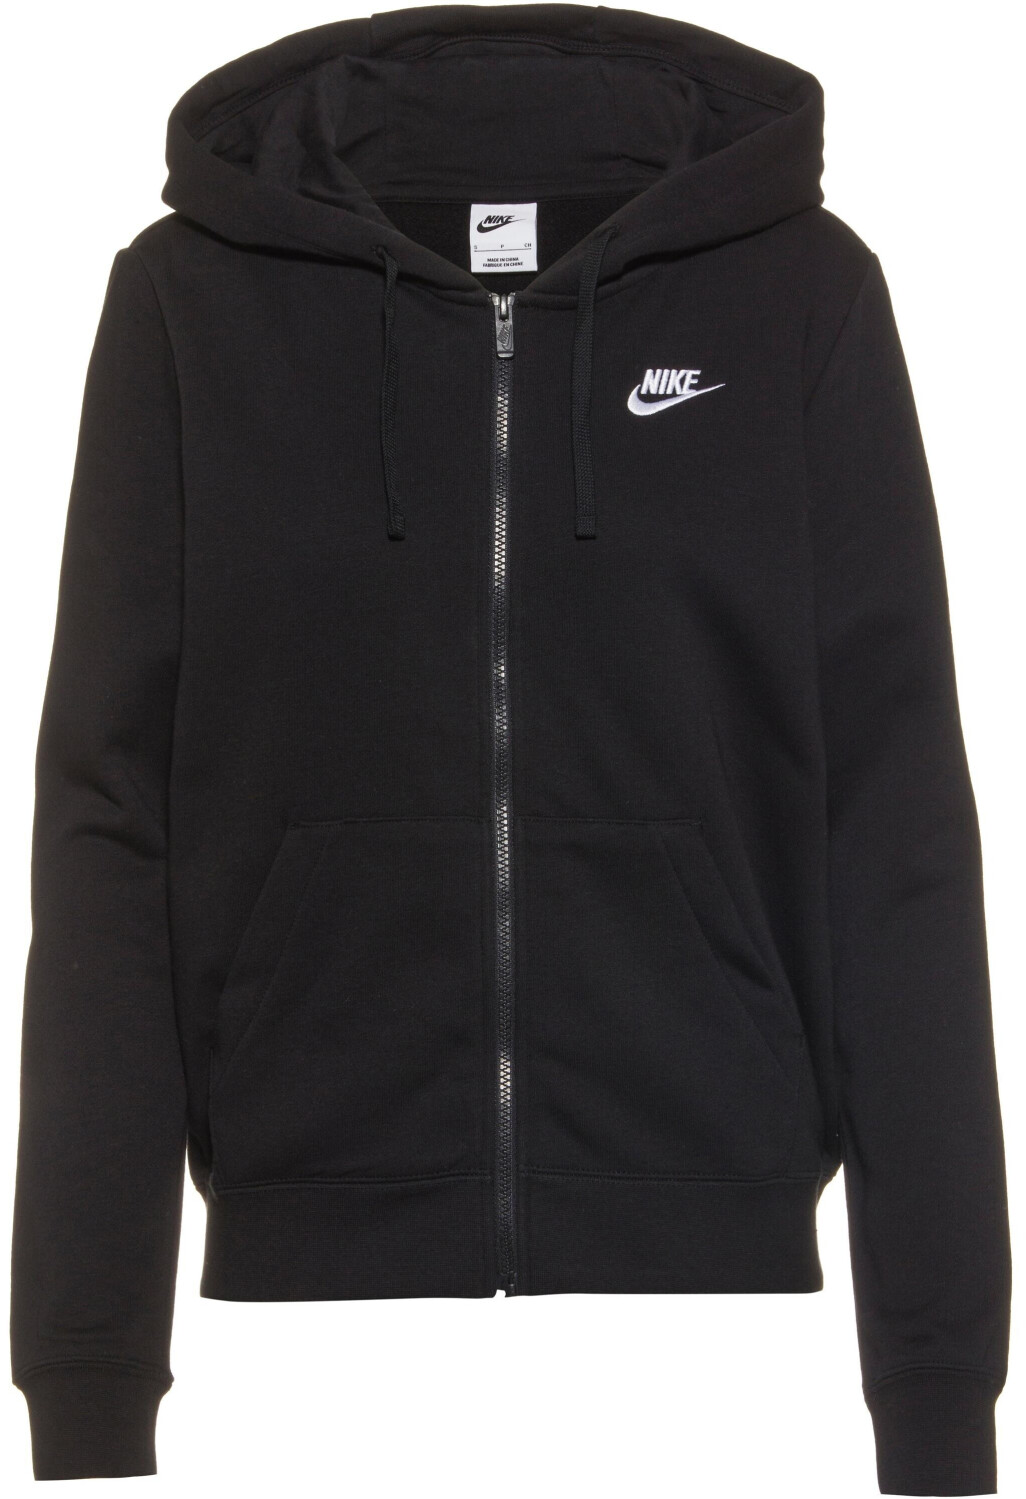 Preisvergleich Fleece Sportswear W FZ € Hoodie Club | ab 39,99 (DQ5471) Nike bei